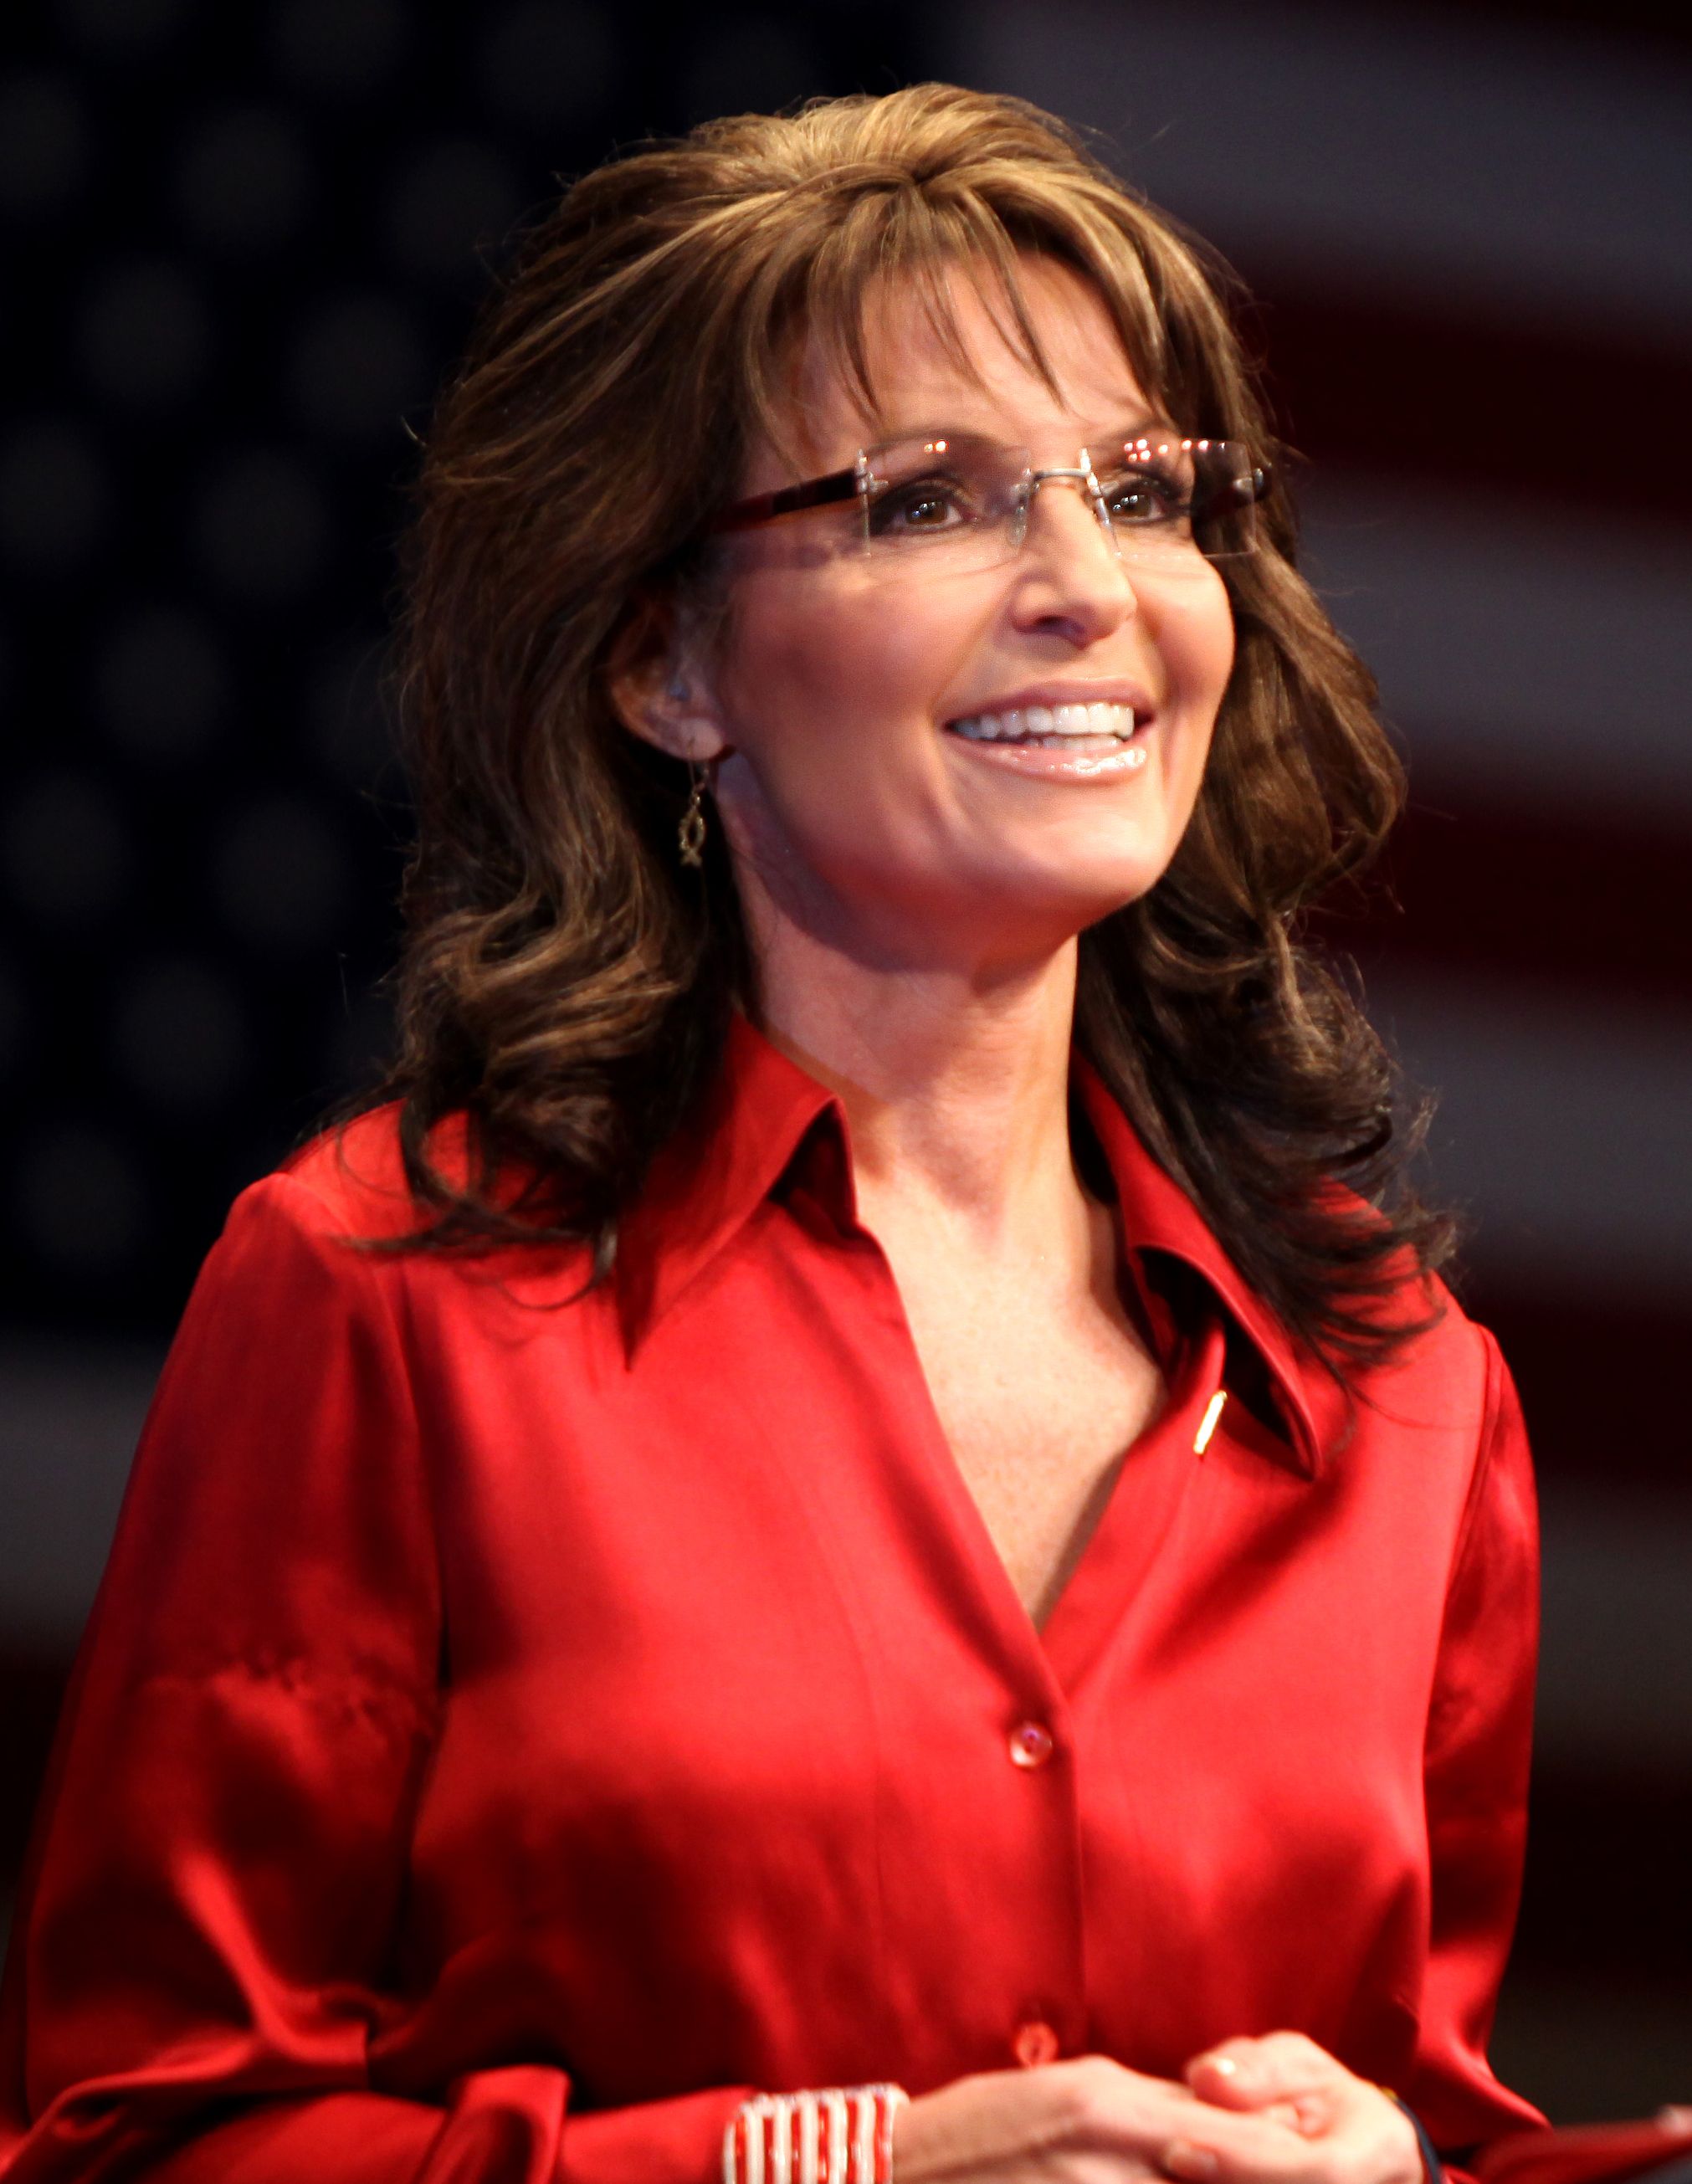 Pictures Of Sarah Palin 